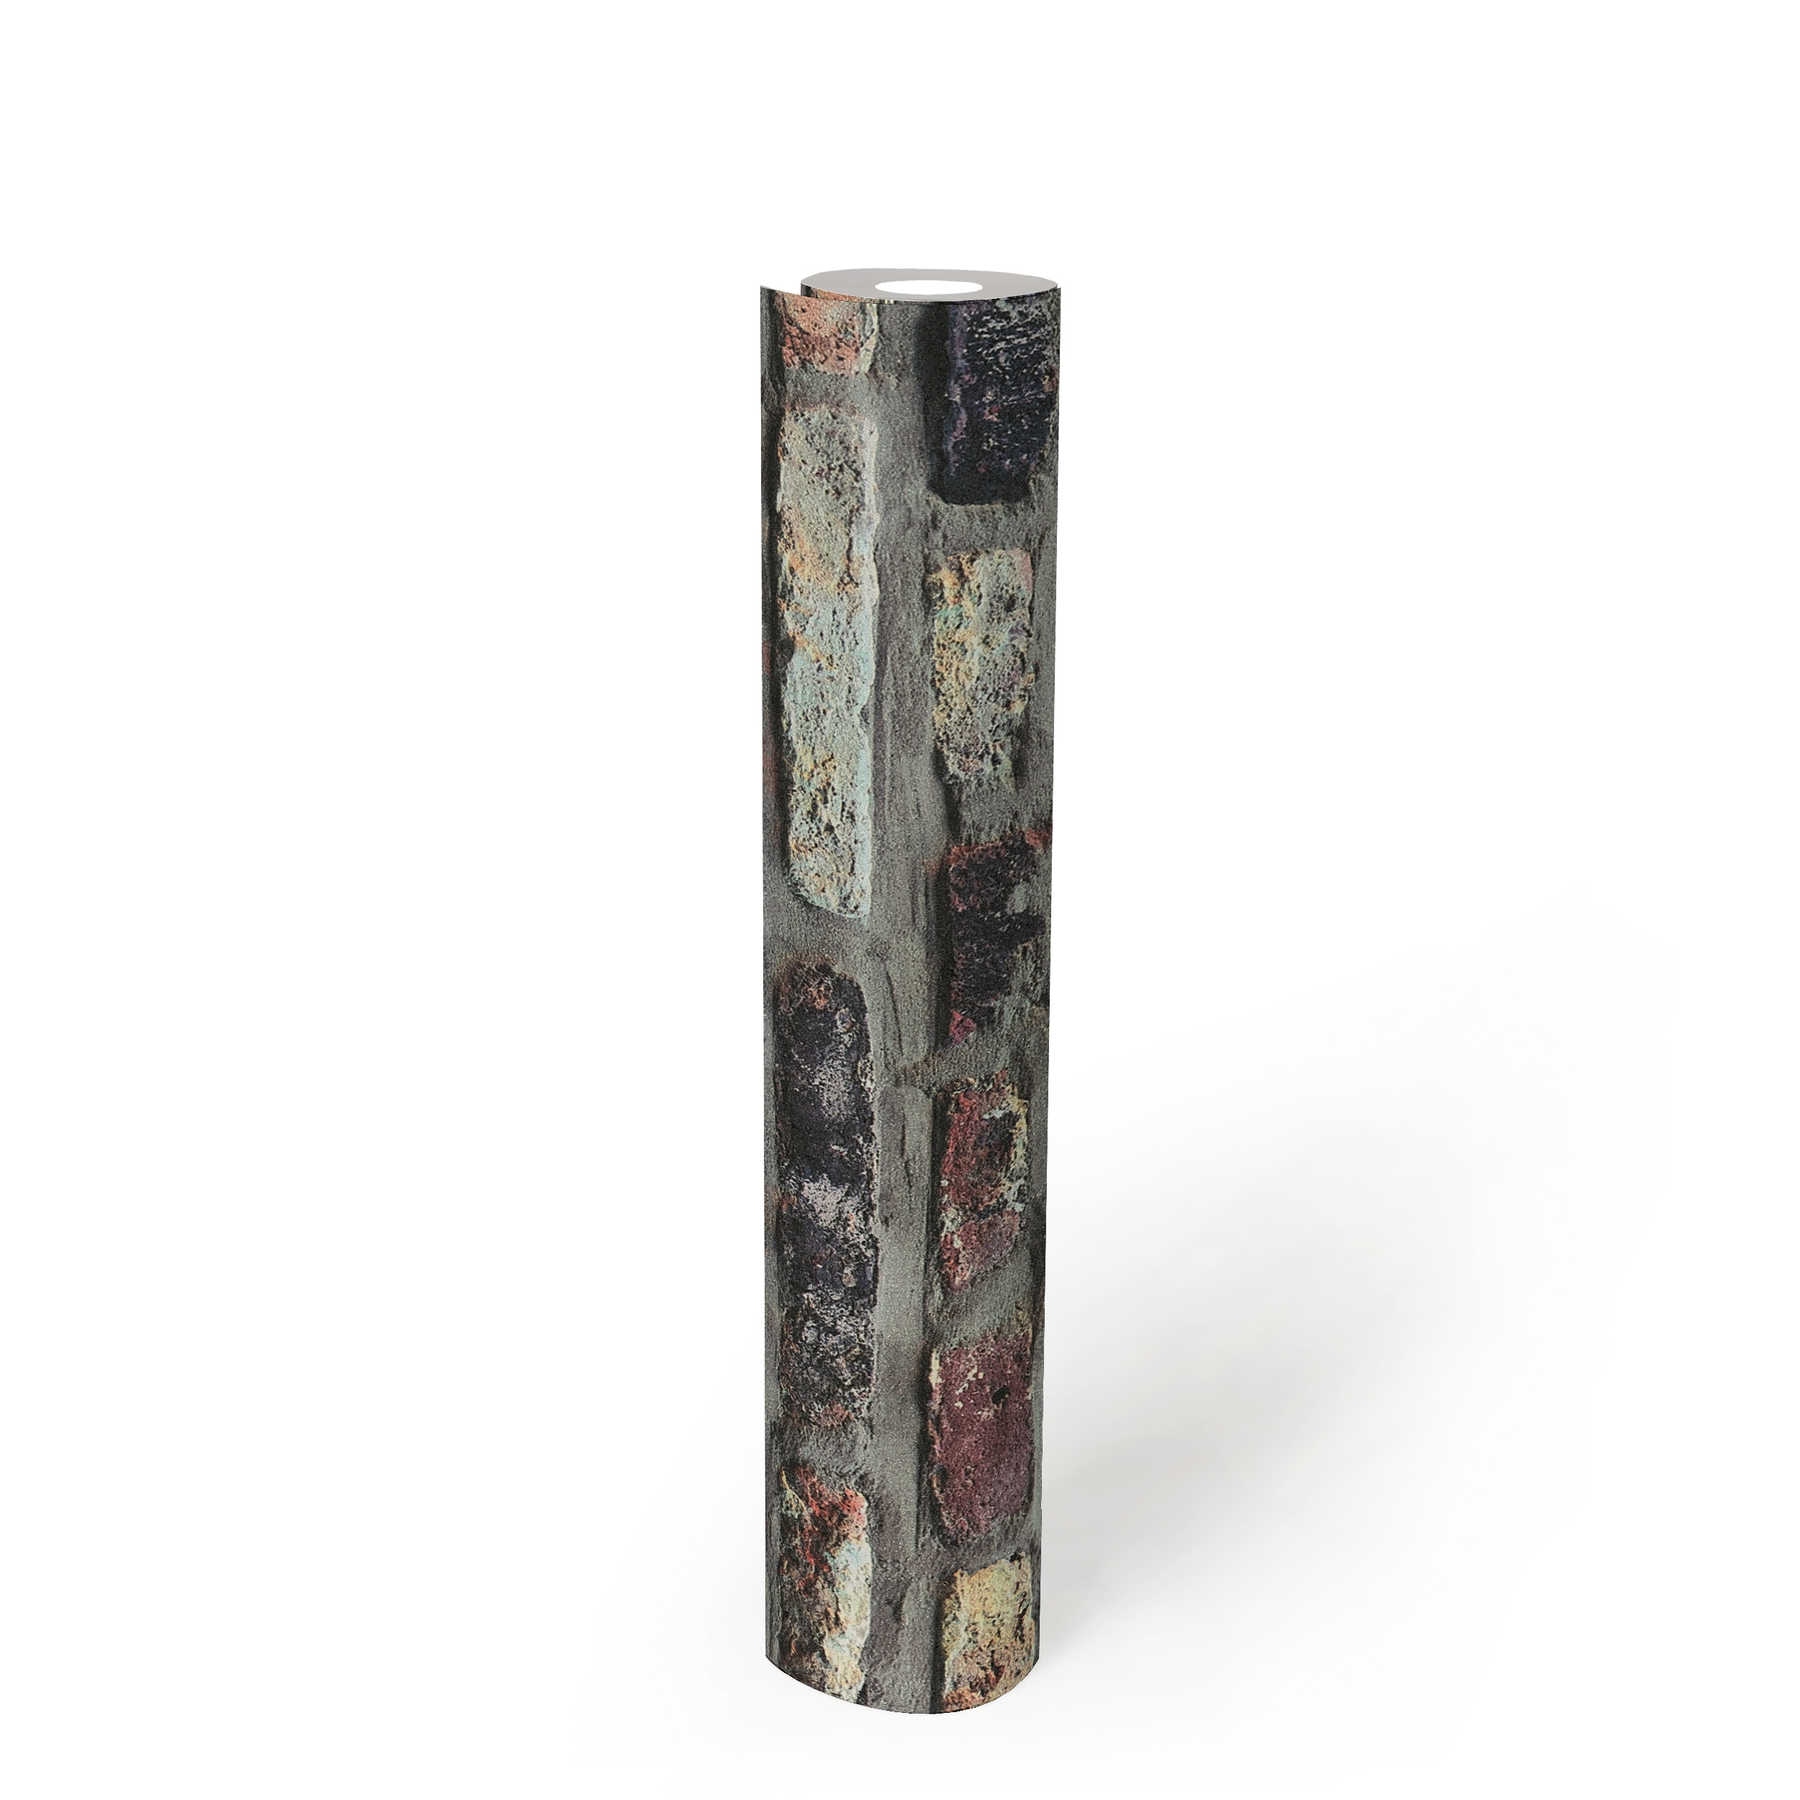             Papel pintado de piedra de ladrillo rústico en estilo industrial - marrón, gris, beige
        